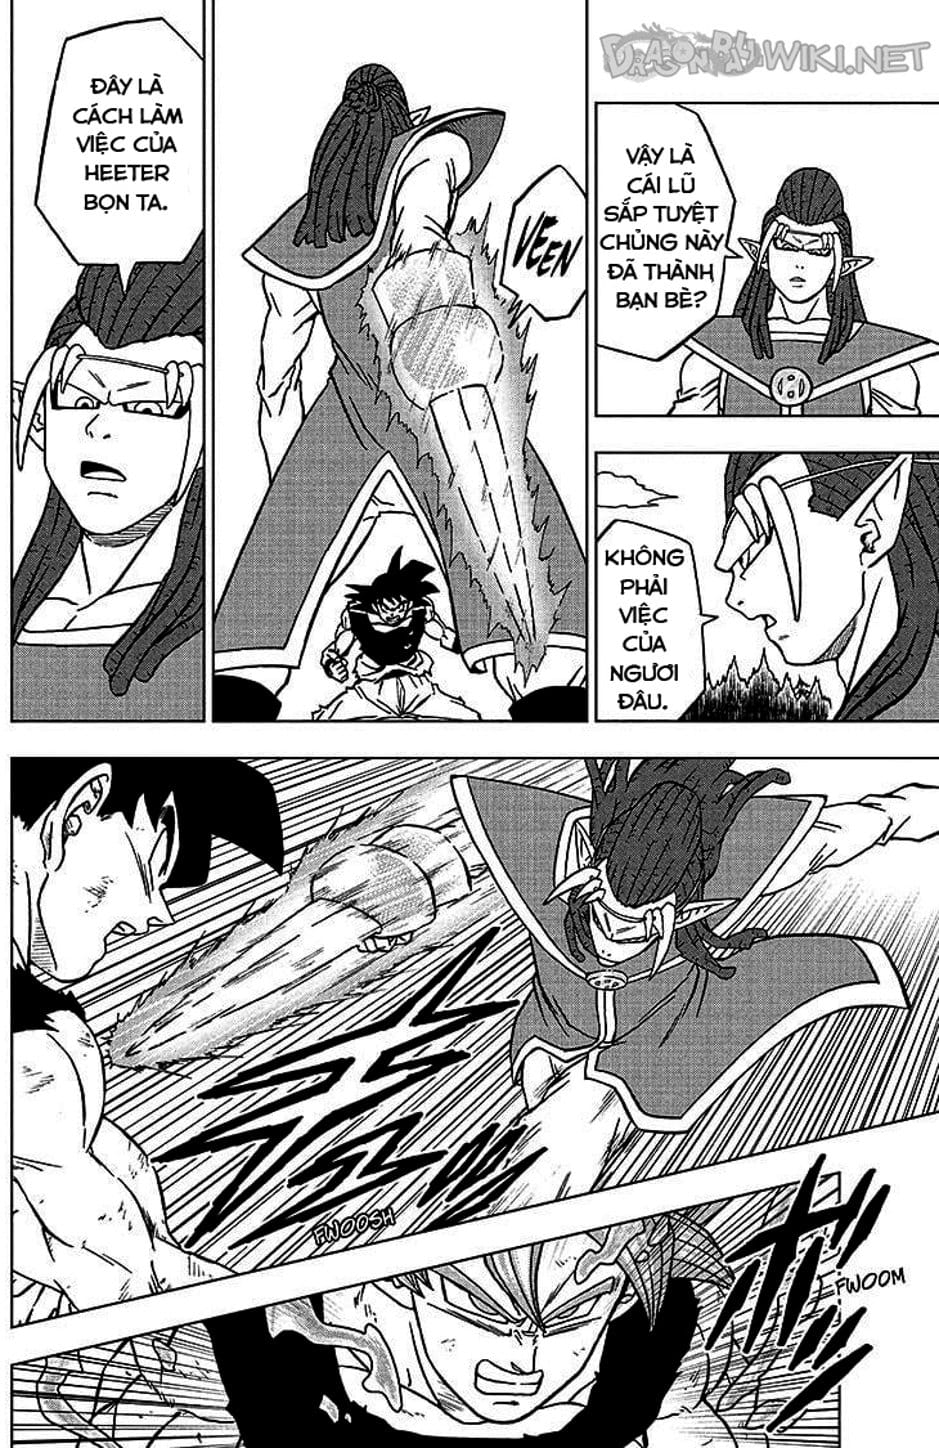 Truyện Tranh Truy Tìm Ngọc Rồng Siêu Cấp - Dragon Ball Super trang 3146